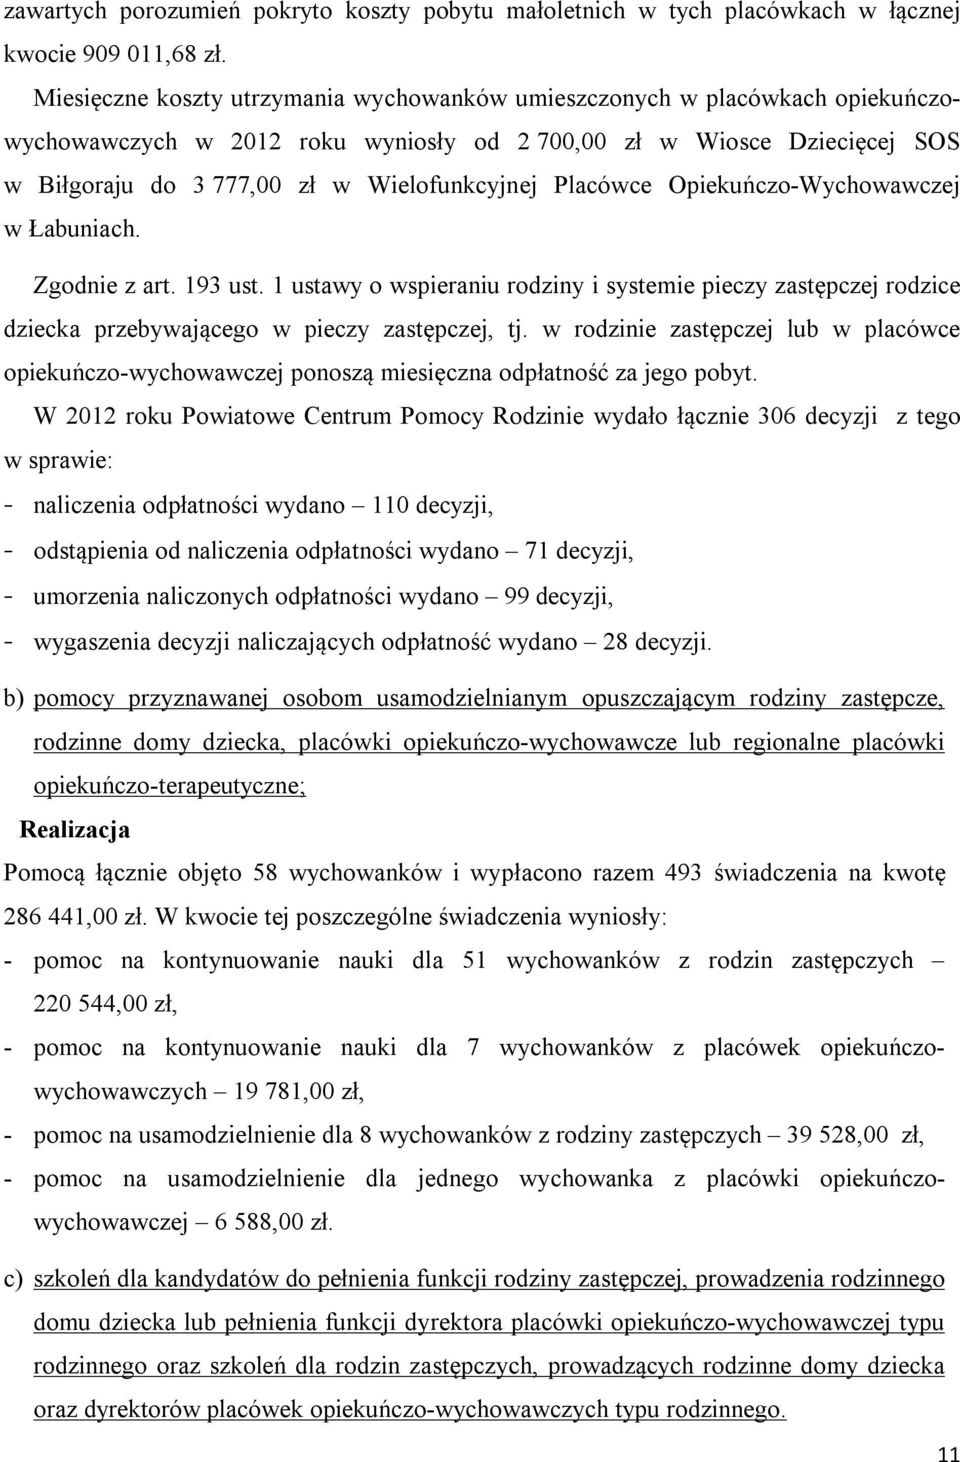 Placówce Opiekuńczo-Wychowawczej w Łabuniach. Zgodnie z art. 193 ust. 1 ustawy o wspieraniu rodziny i systemie pieczy zastępczej rodzice dziecka przebywającego w pieczy zastępczej, tj.